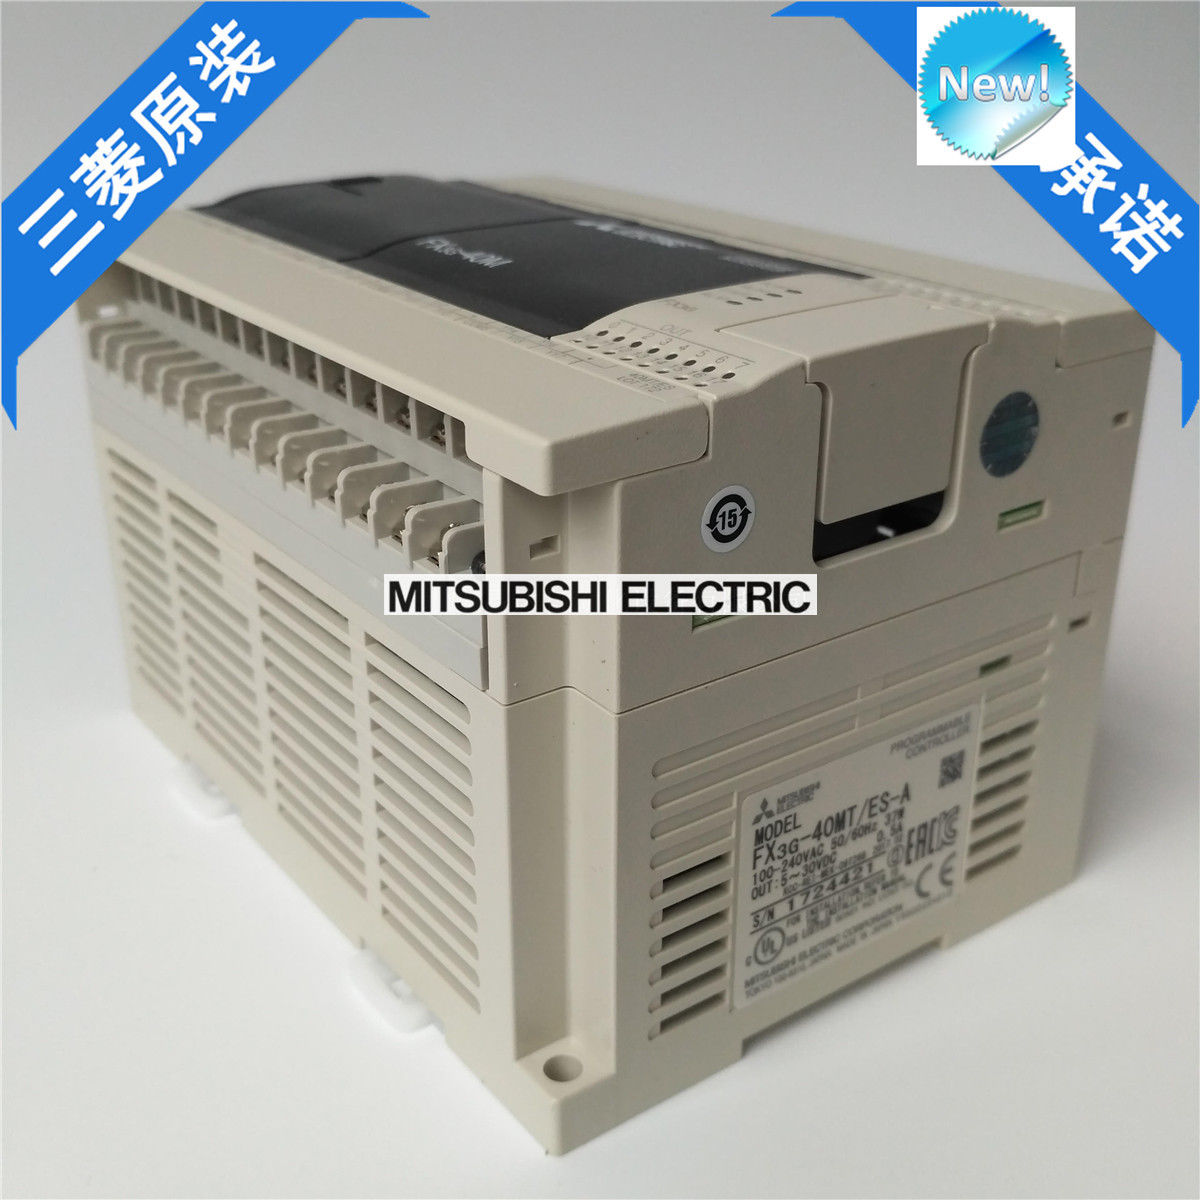 Original New Mitsubishi PLC FX3G-40MT/ES-A In Box FX3G40MTESA - zum Schließen ins Bild klicken